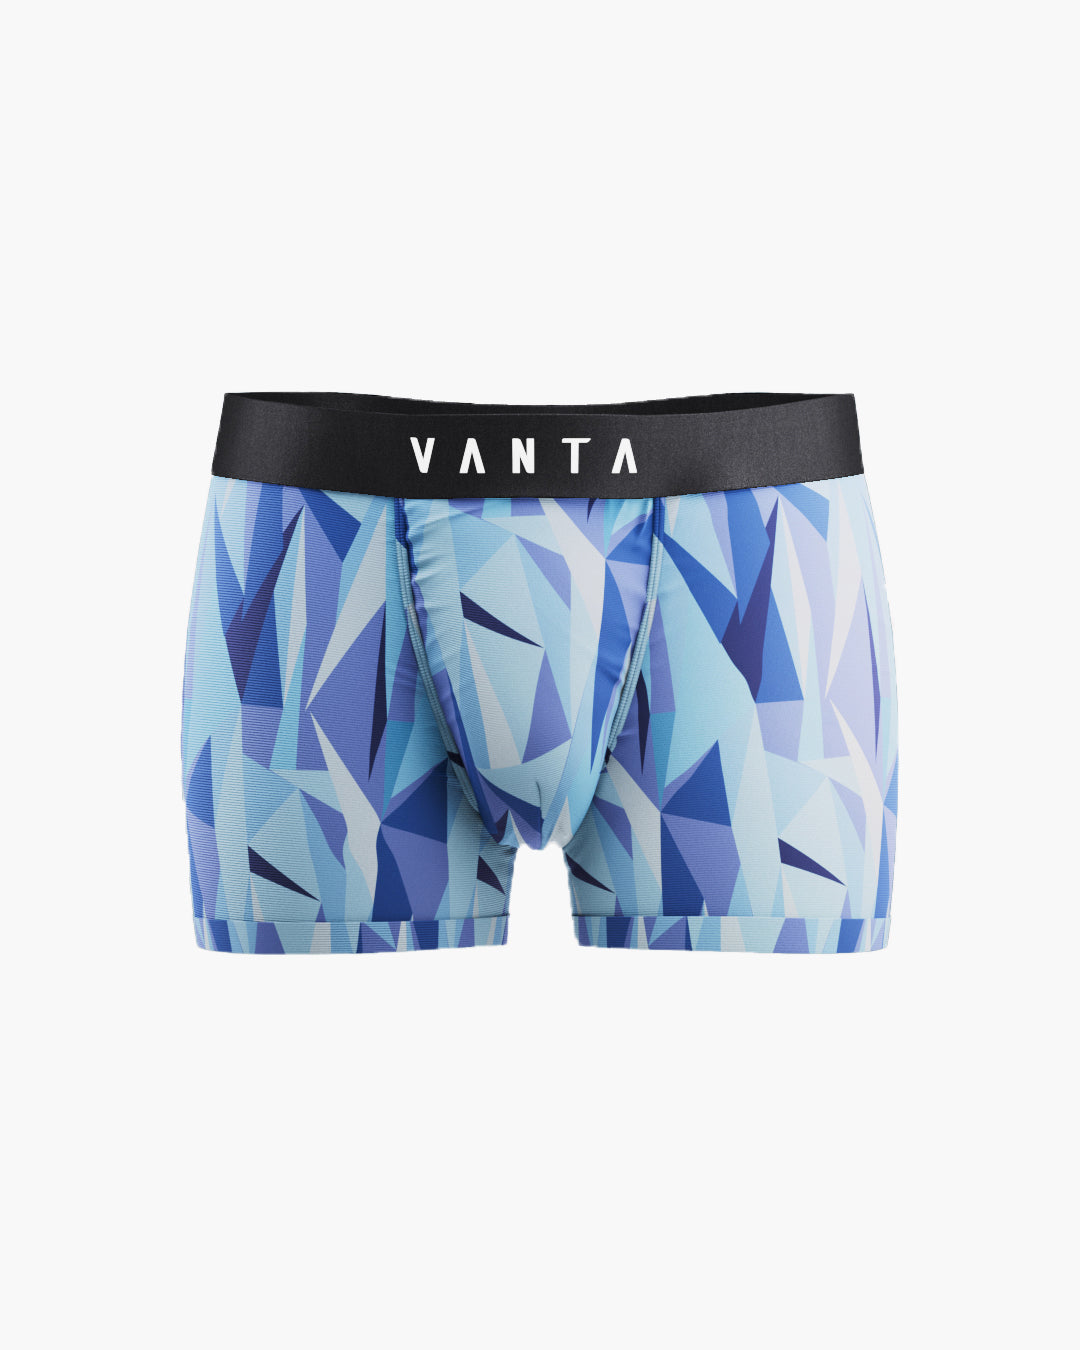 vanta underwear net worth